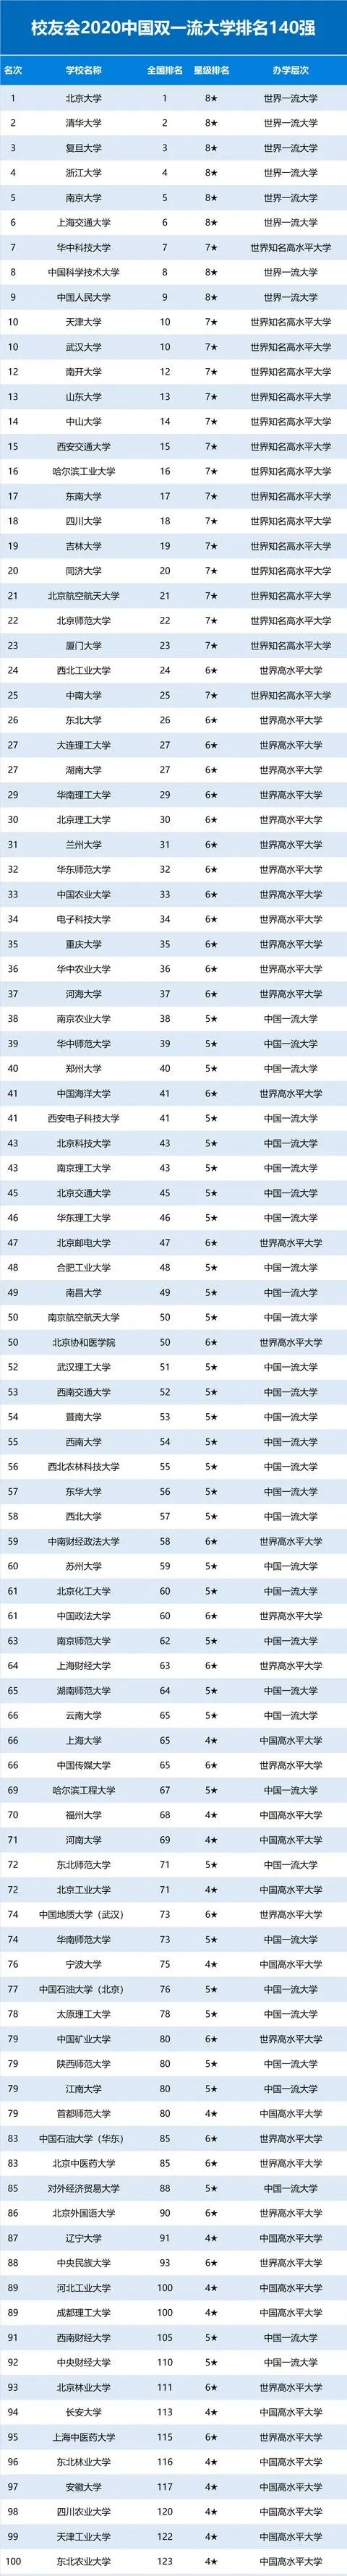 据上图显示,在最新校友会2020中国大学排名100强中,北京大学,清华